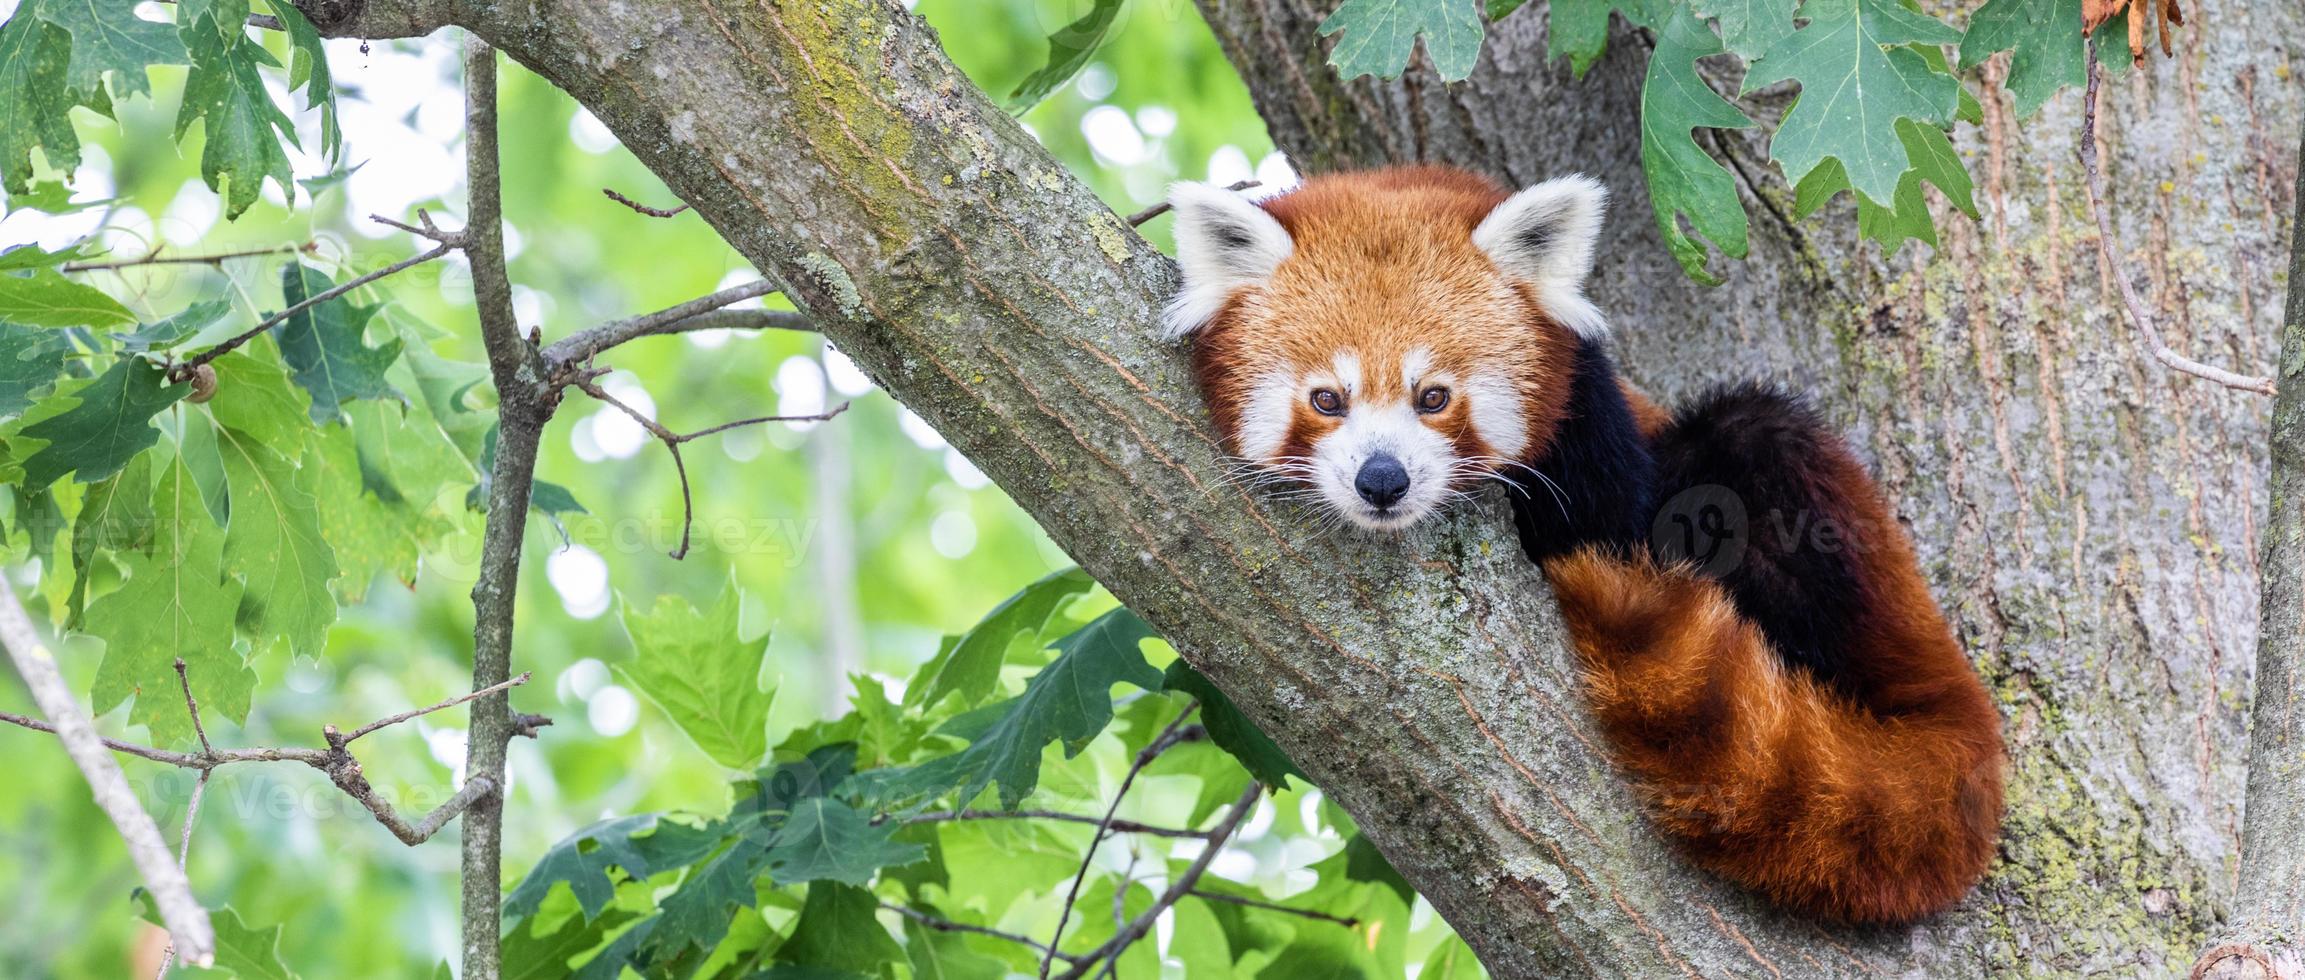 panda vermelho - ailurus fulgens - retrato. animal bonito descansando preguiçoso em uma árvore. foto